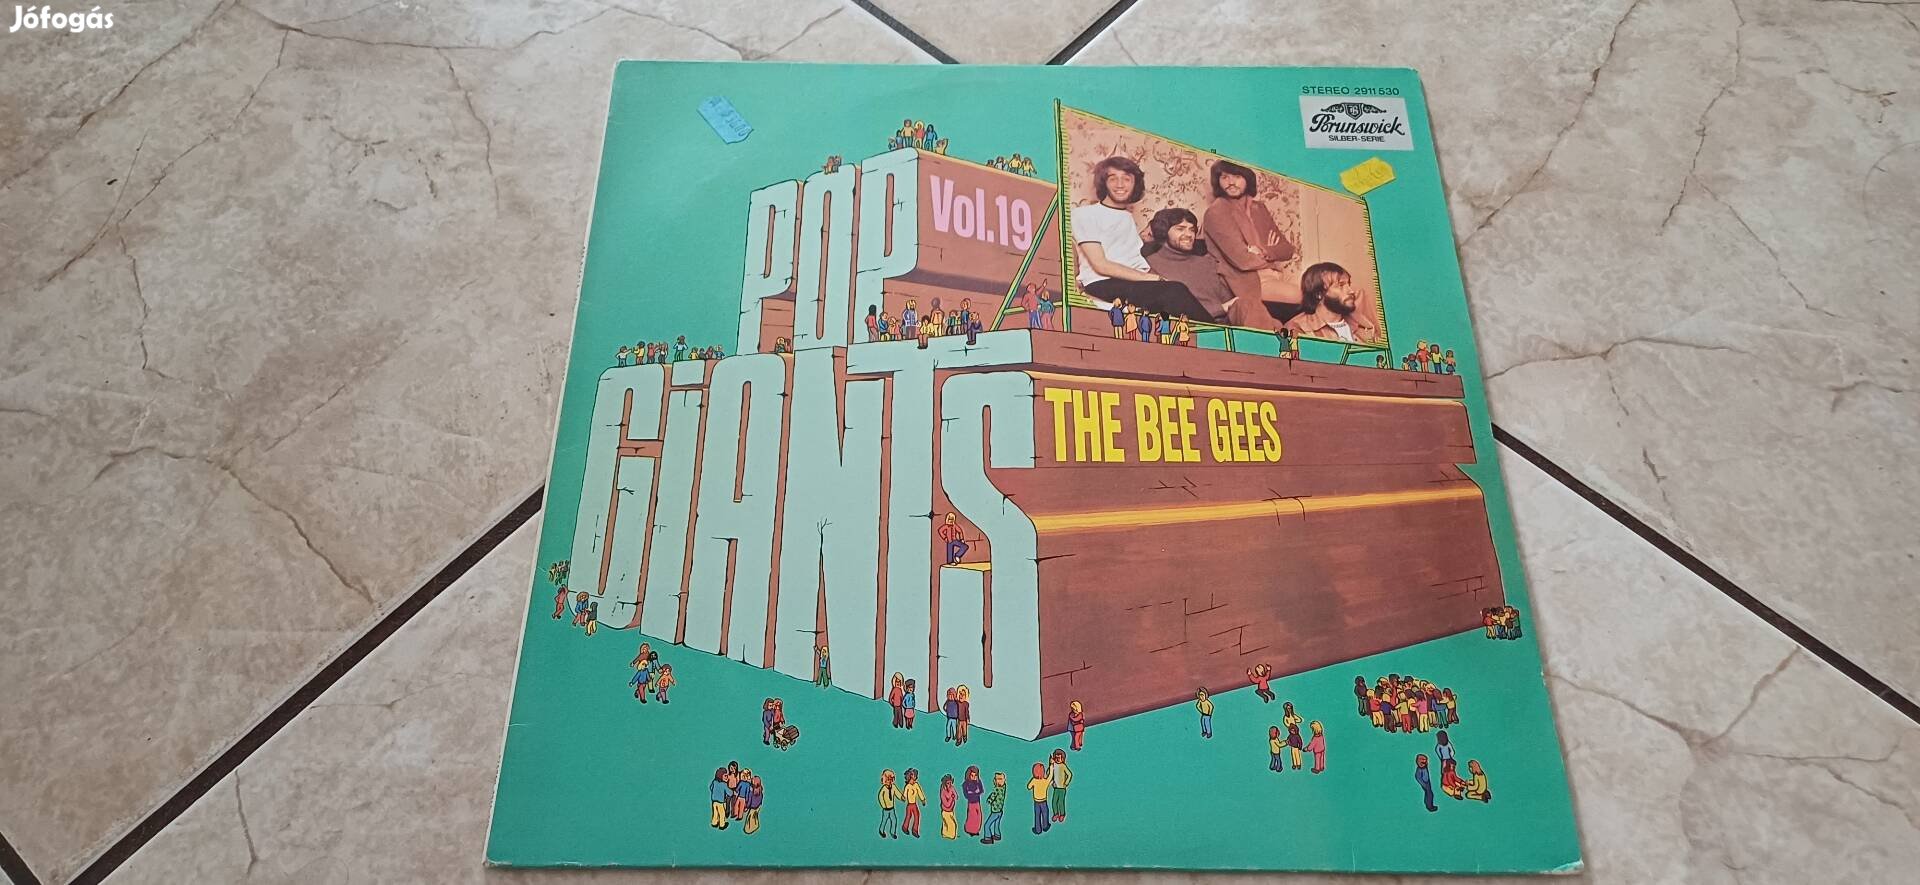 Bee Gees bakelit lemez